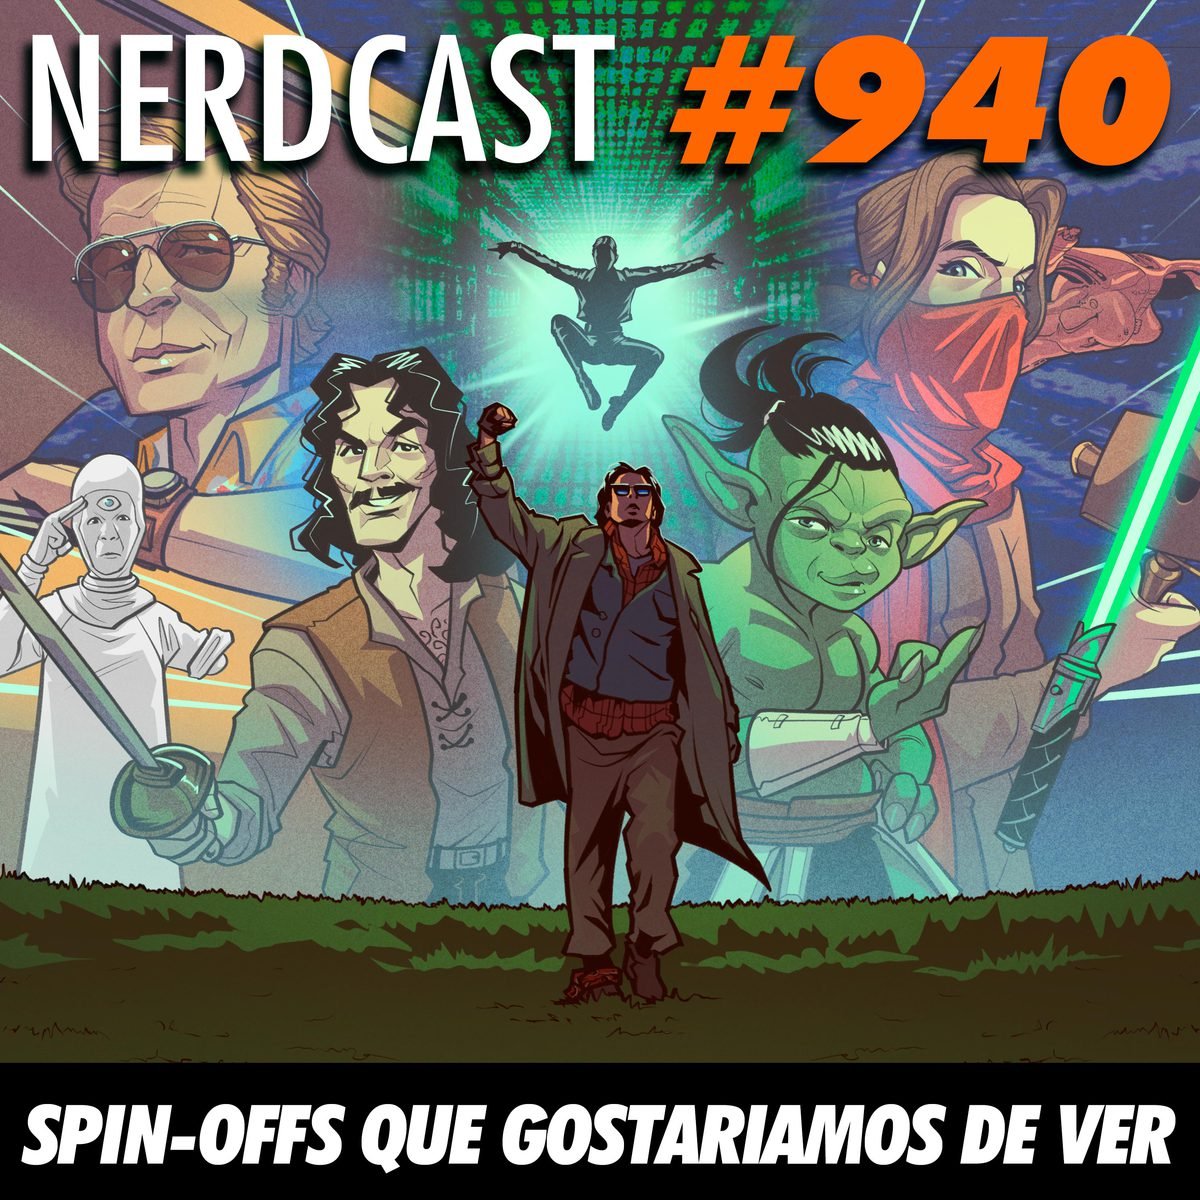 NerdCast 940 - Spin-Offs que gostariamos de ver